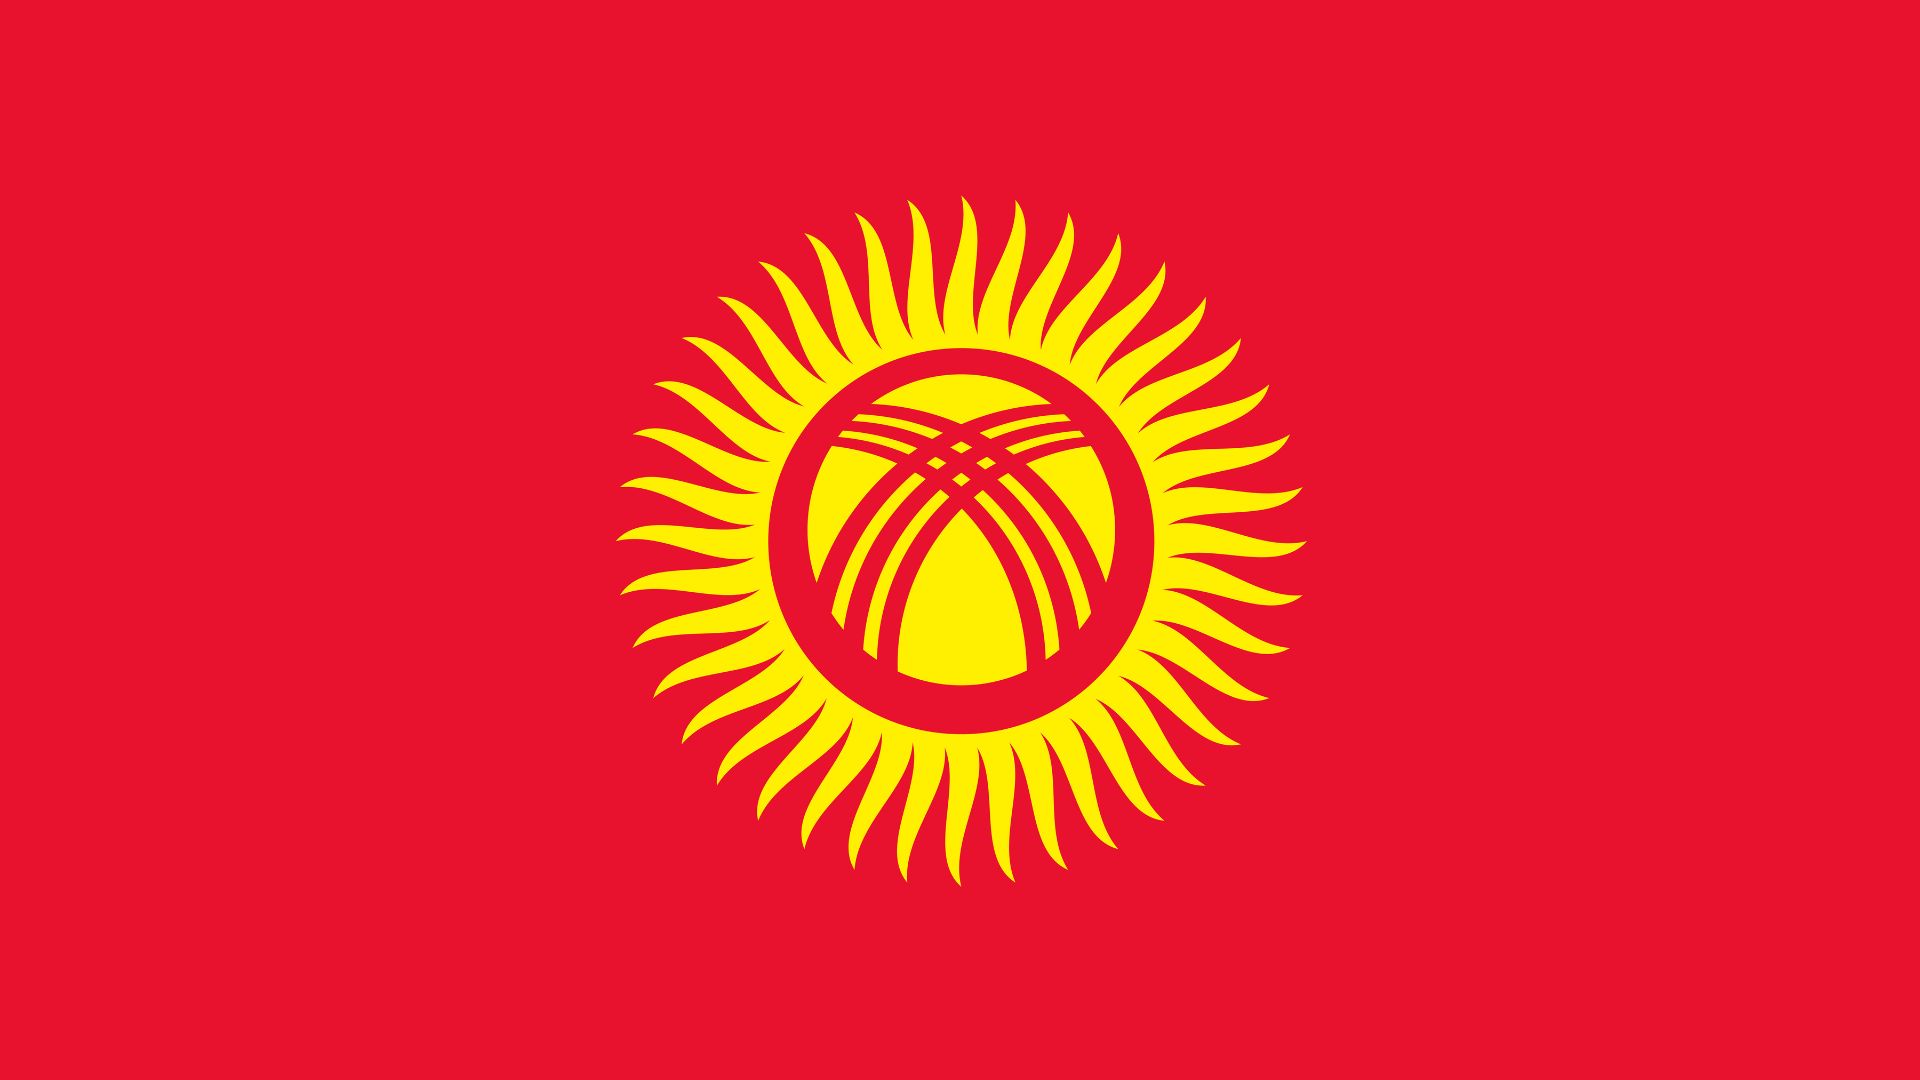 A bandeira do Quirguistão consiste em um retângulo de fundo vermelho com um sol dourado ao centro.